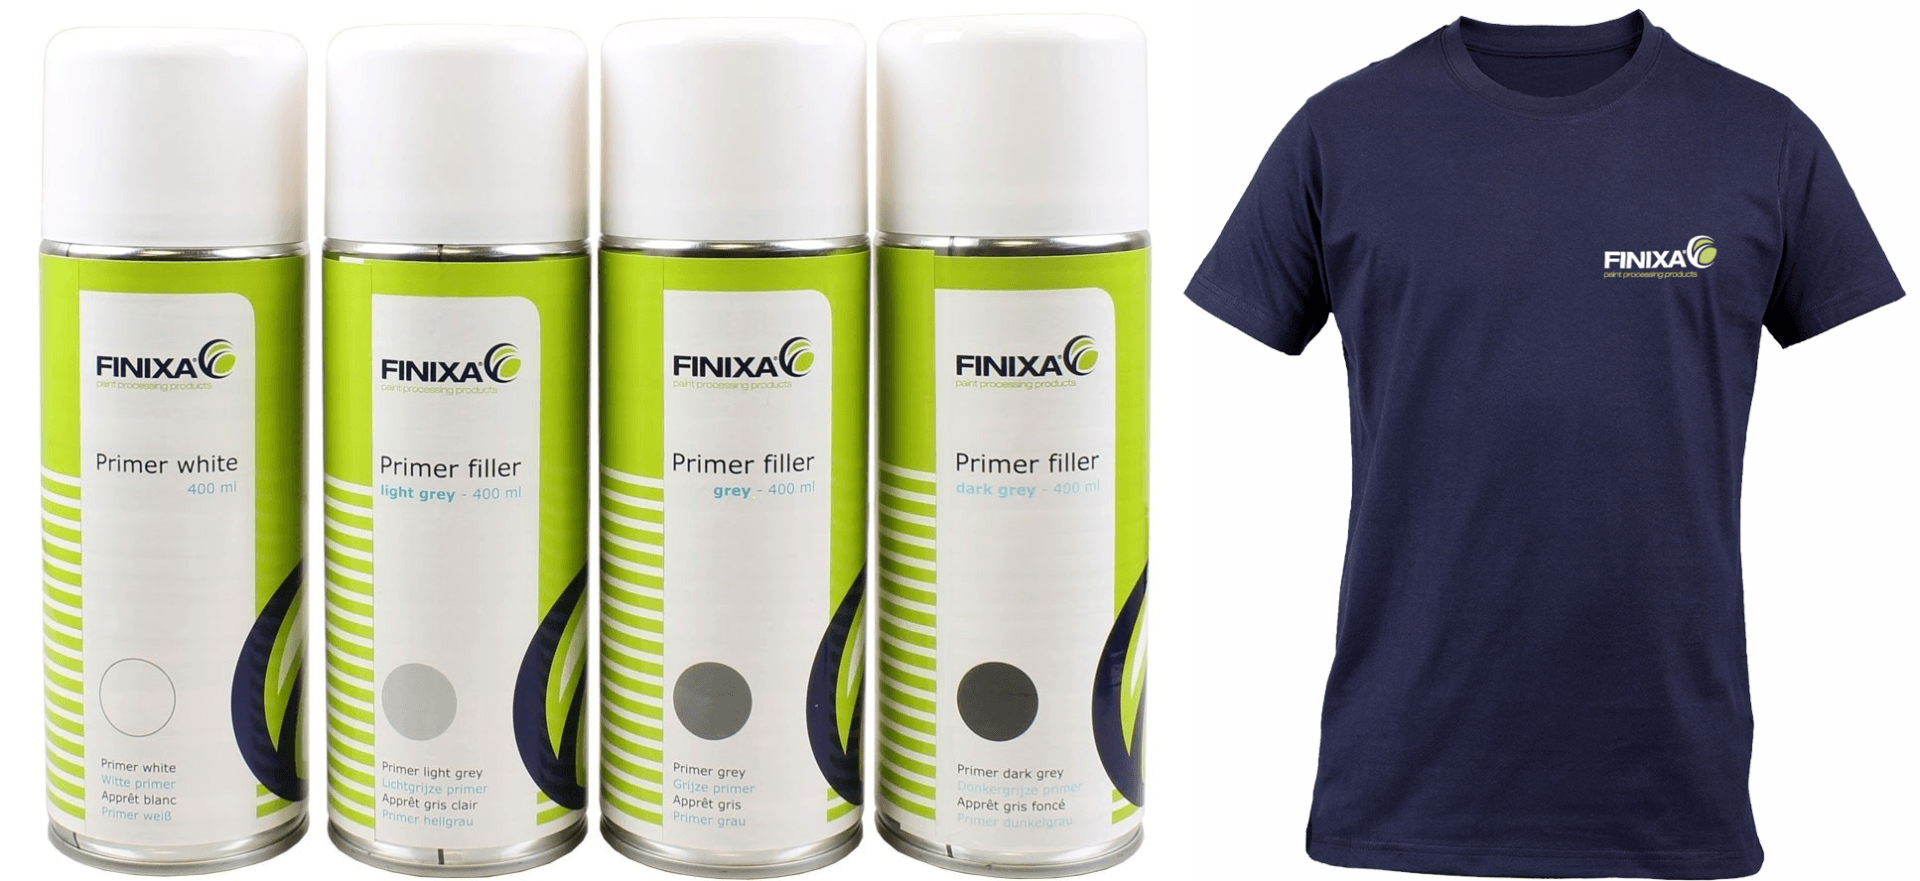 FINIXA Primer Aktion - 12 Spraydosen + Gratis T-Shirt